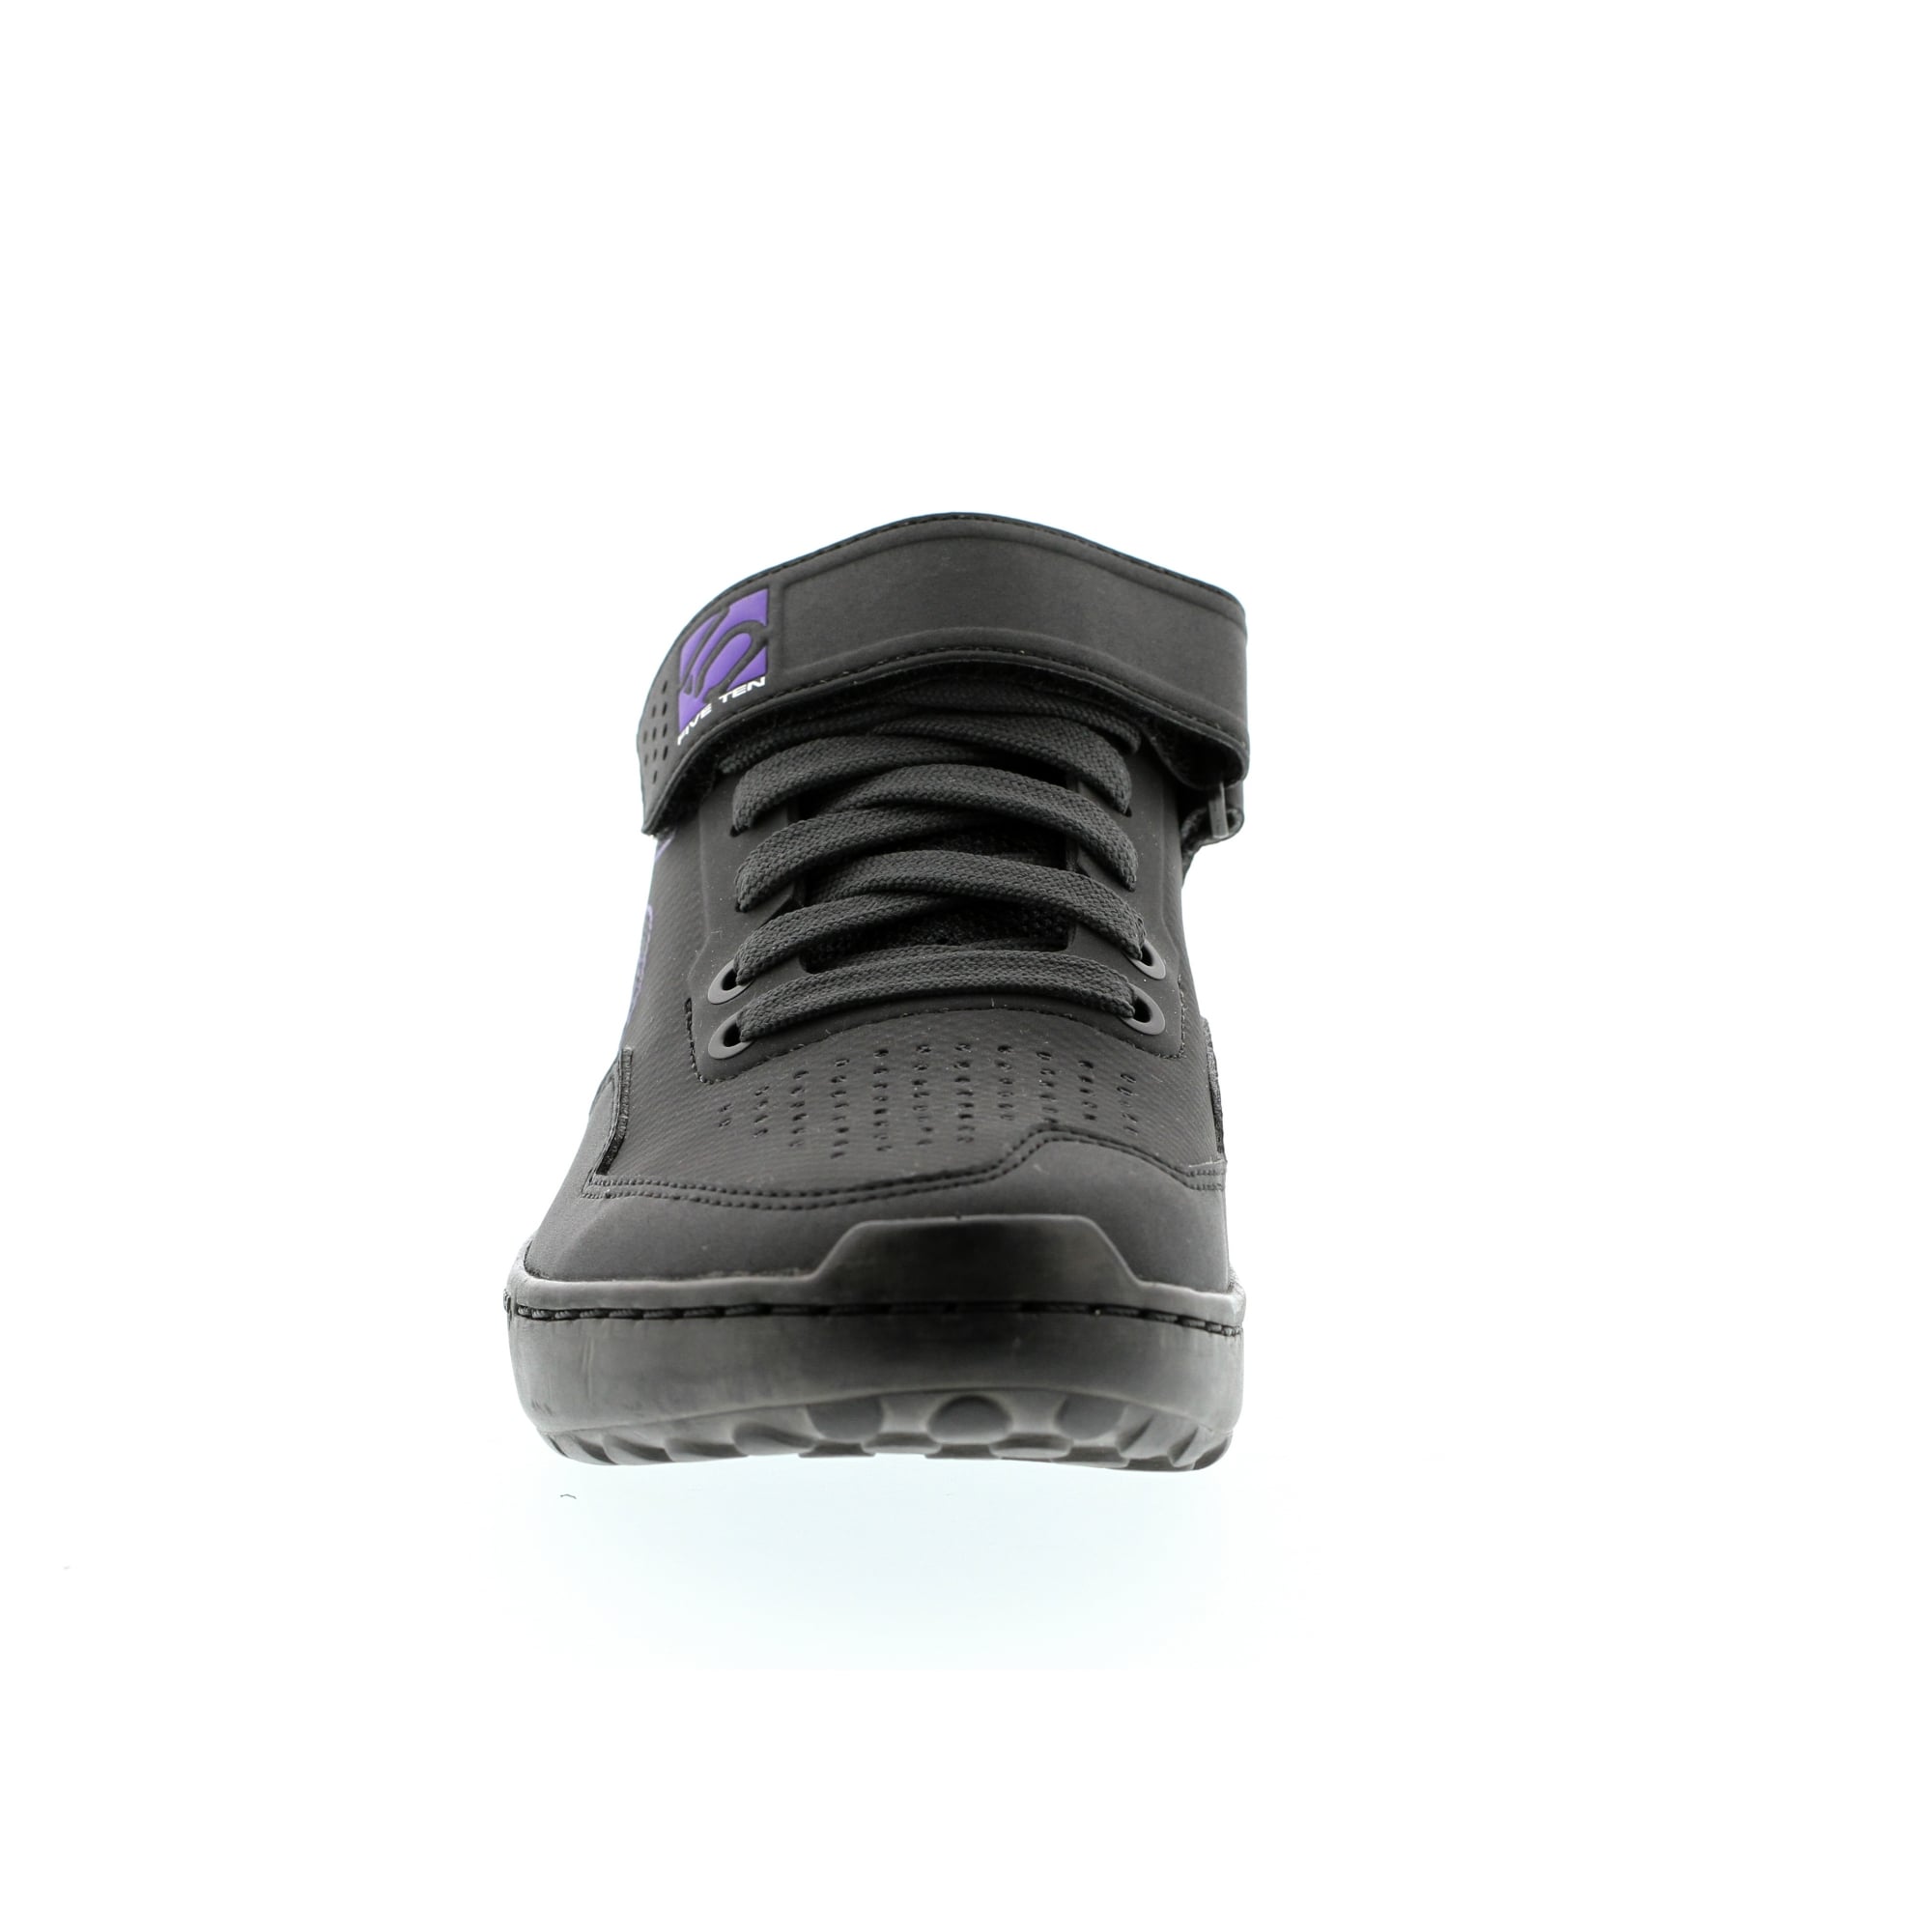 Five Ten Kestrel Lace Women's MTB Shoe - Black/Purple